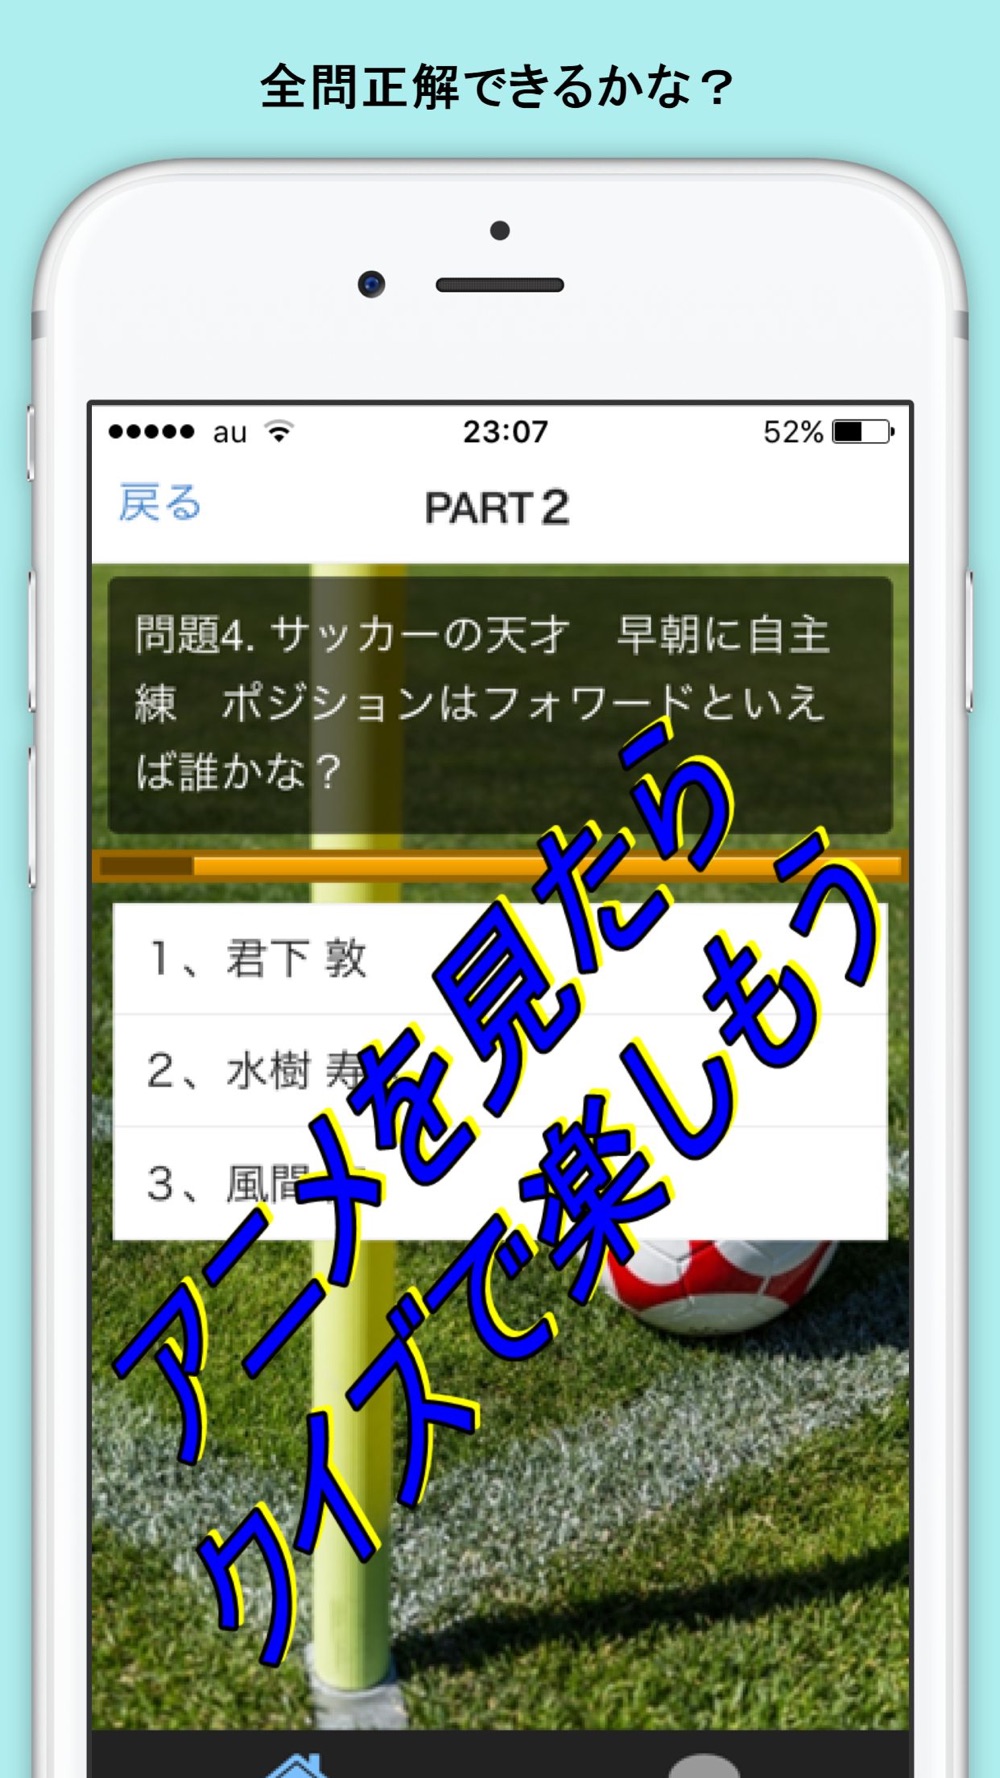 クイズ For Days 高校サッカー Free Download App For Iphone Steprimo Com